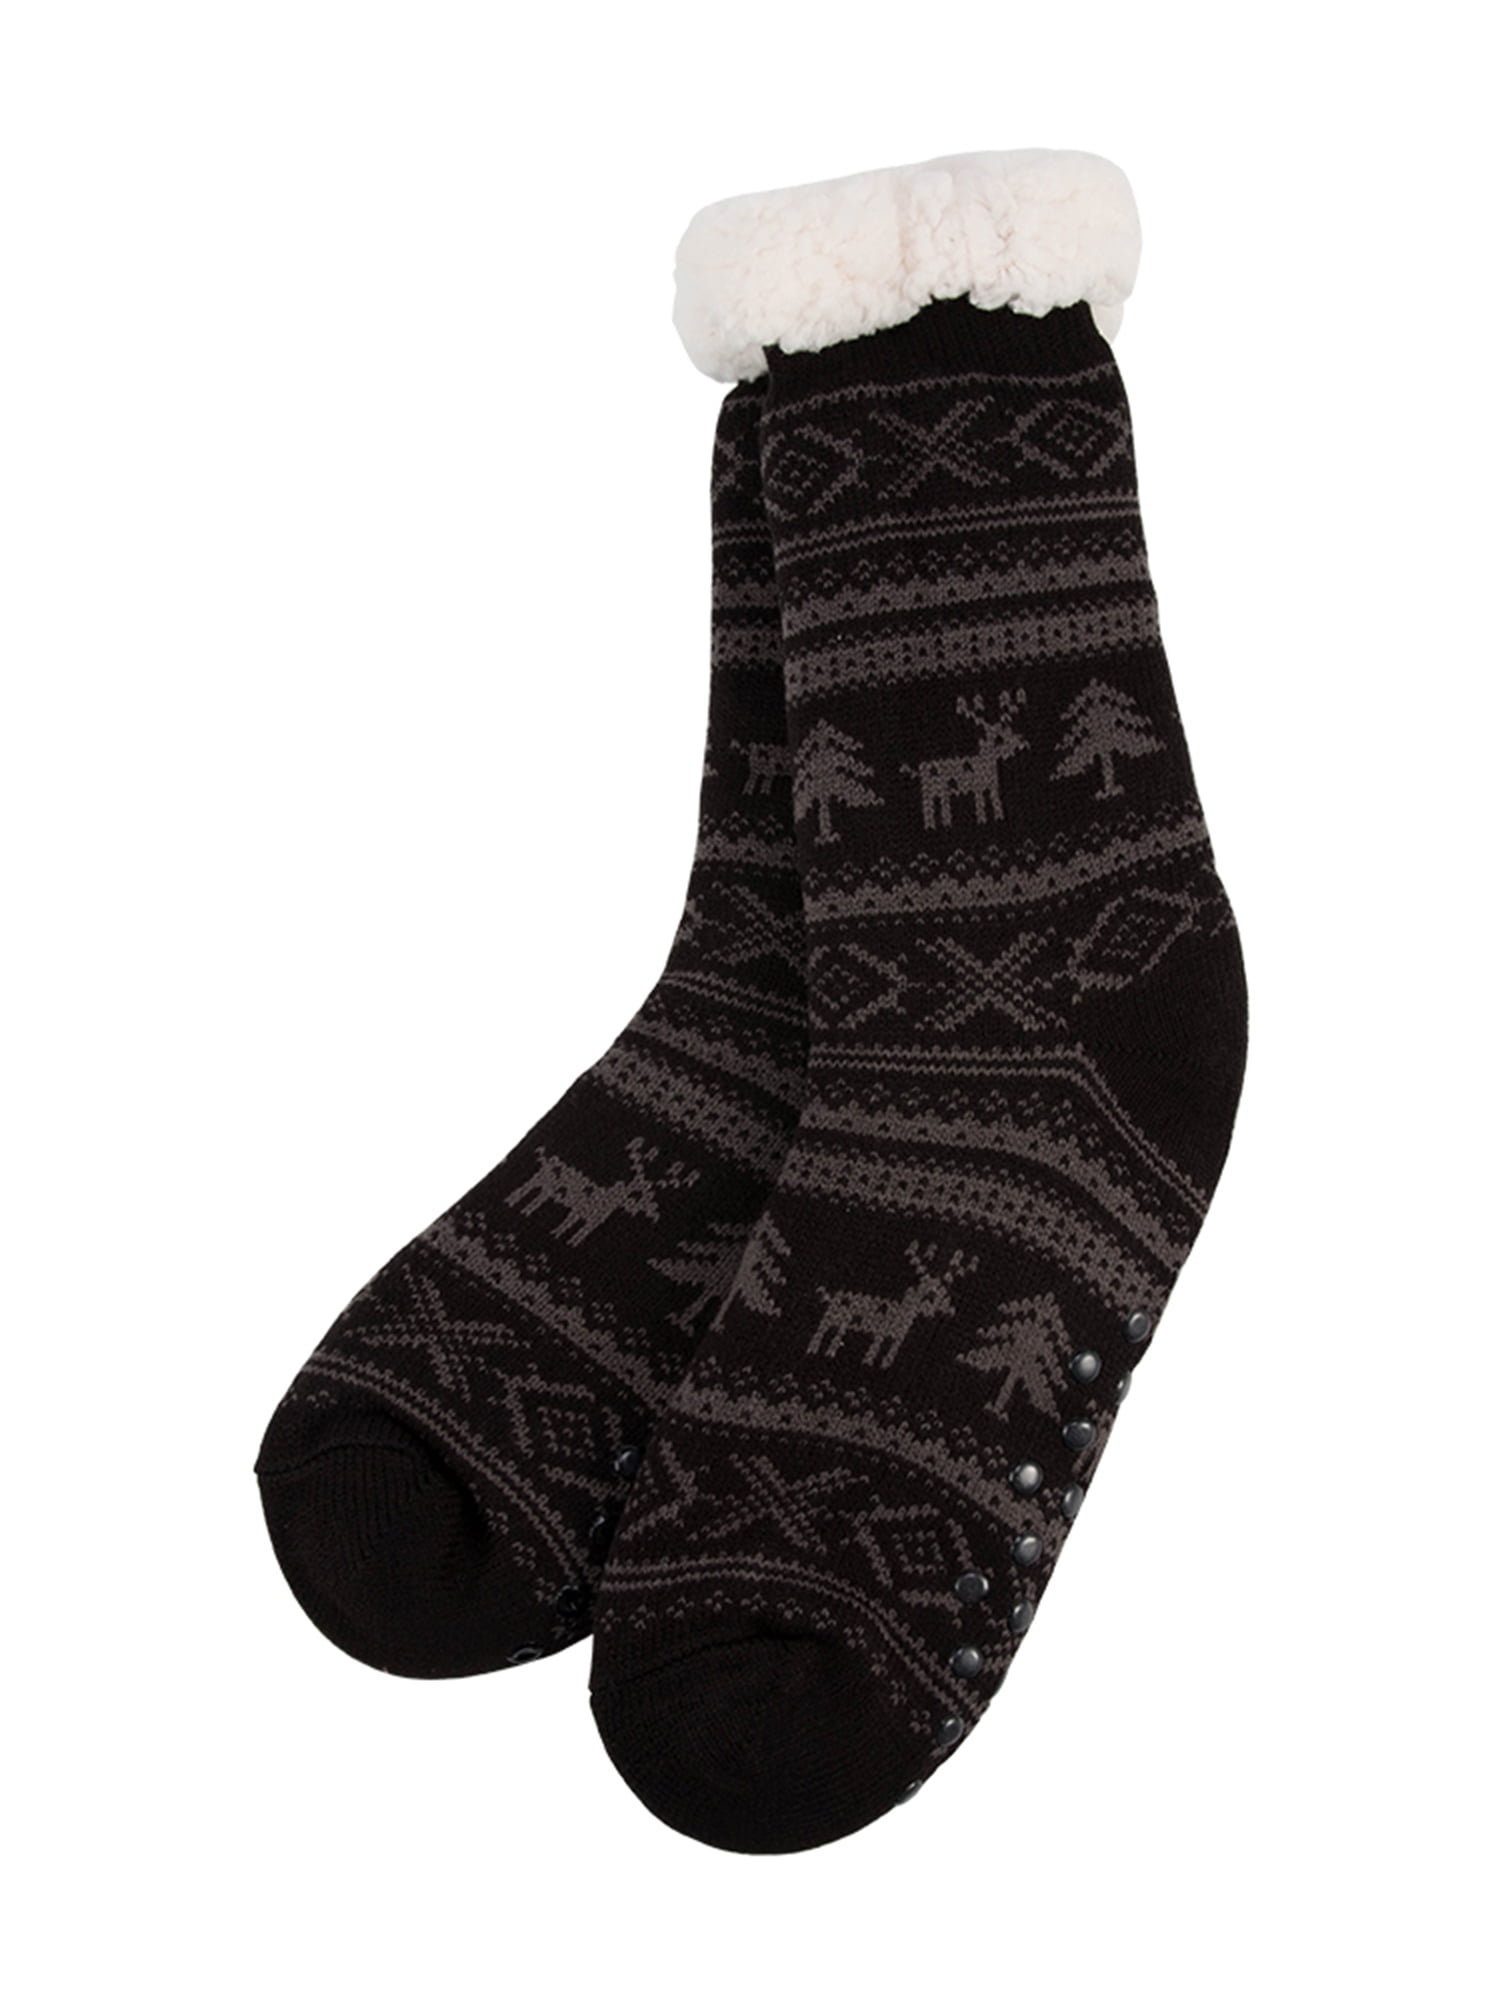 Newstar T032MBK Christmas Slipper Socks 